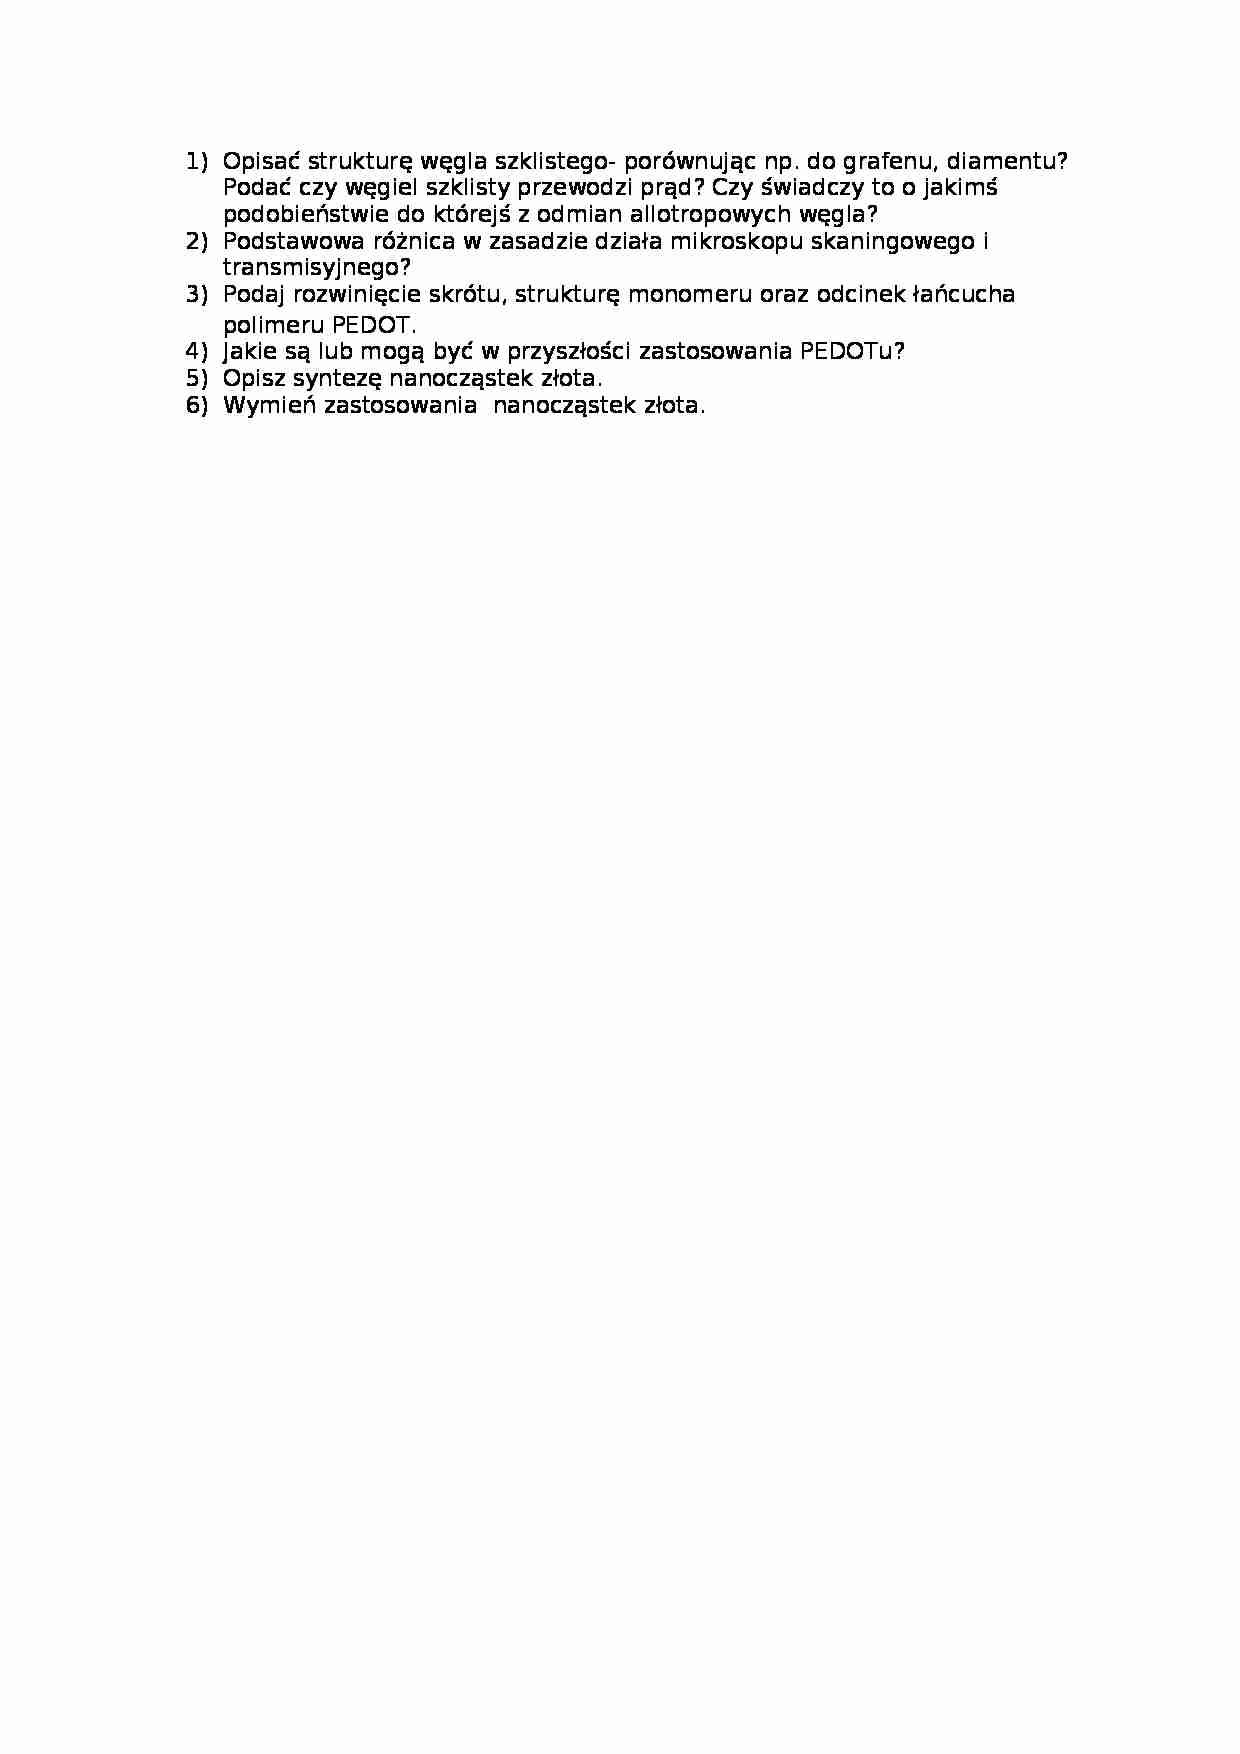 Chemia nieorganiczna-pytania - strona 1